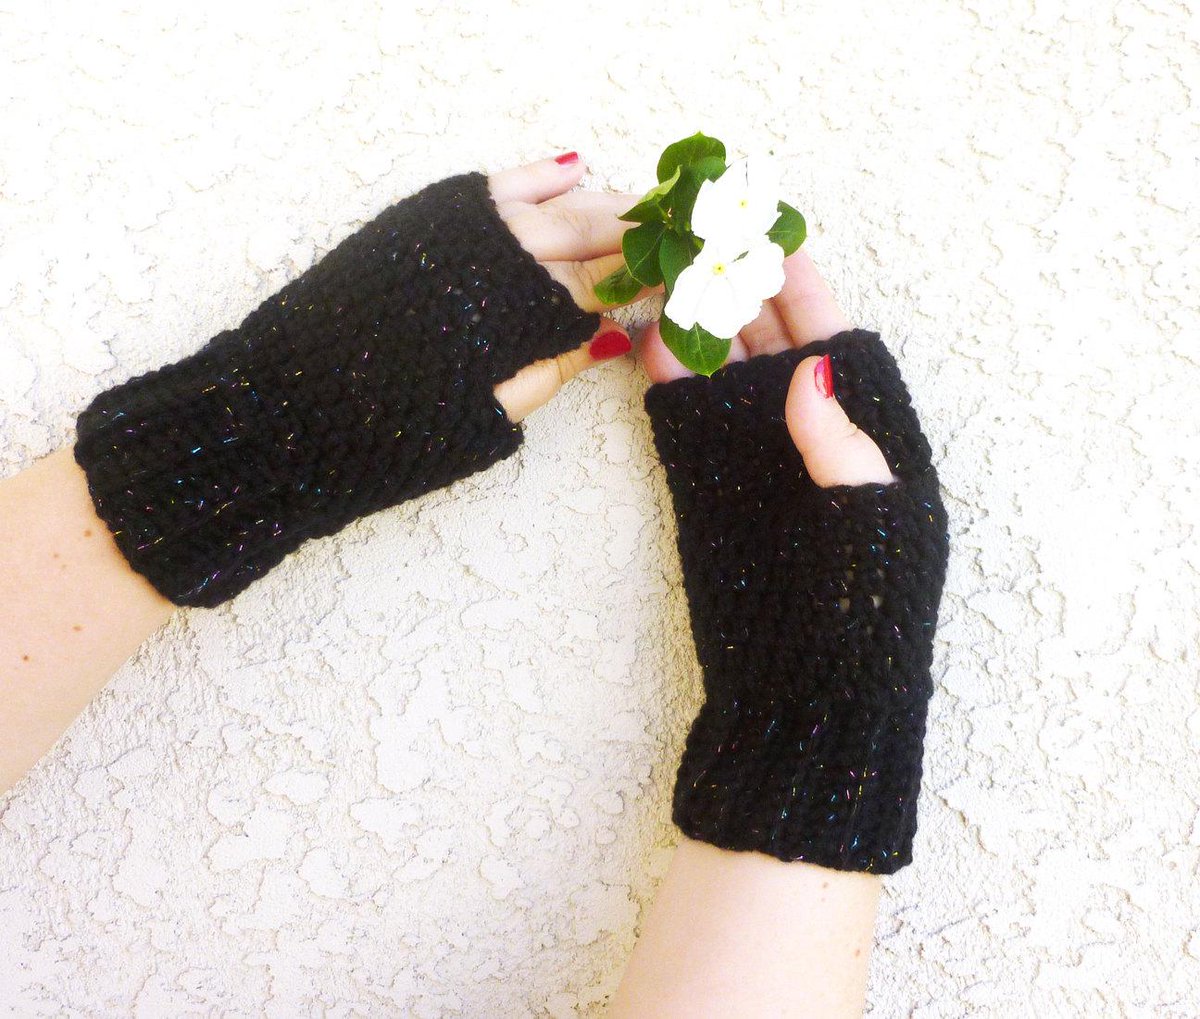 Fingerless Gloves Handmade Crochet wristers Black Womens glove mag… etsy.me/1nqmRkZ #Etsy #CrochetFingerless